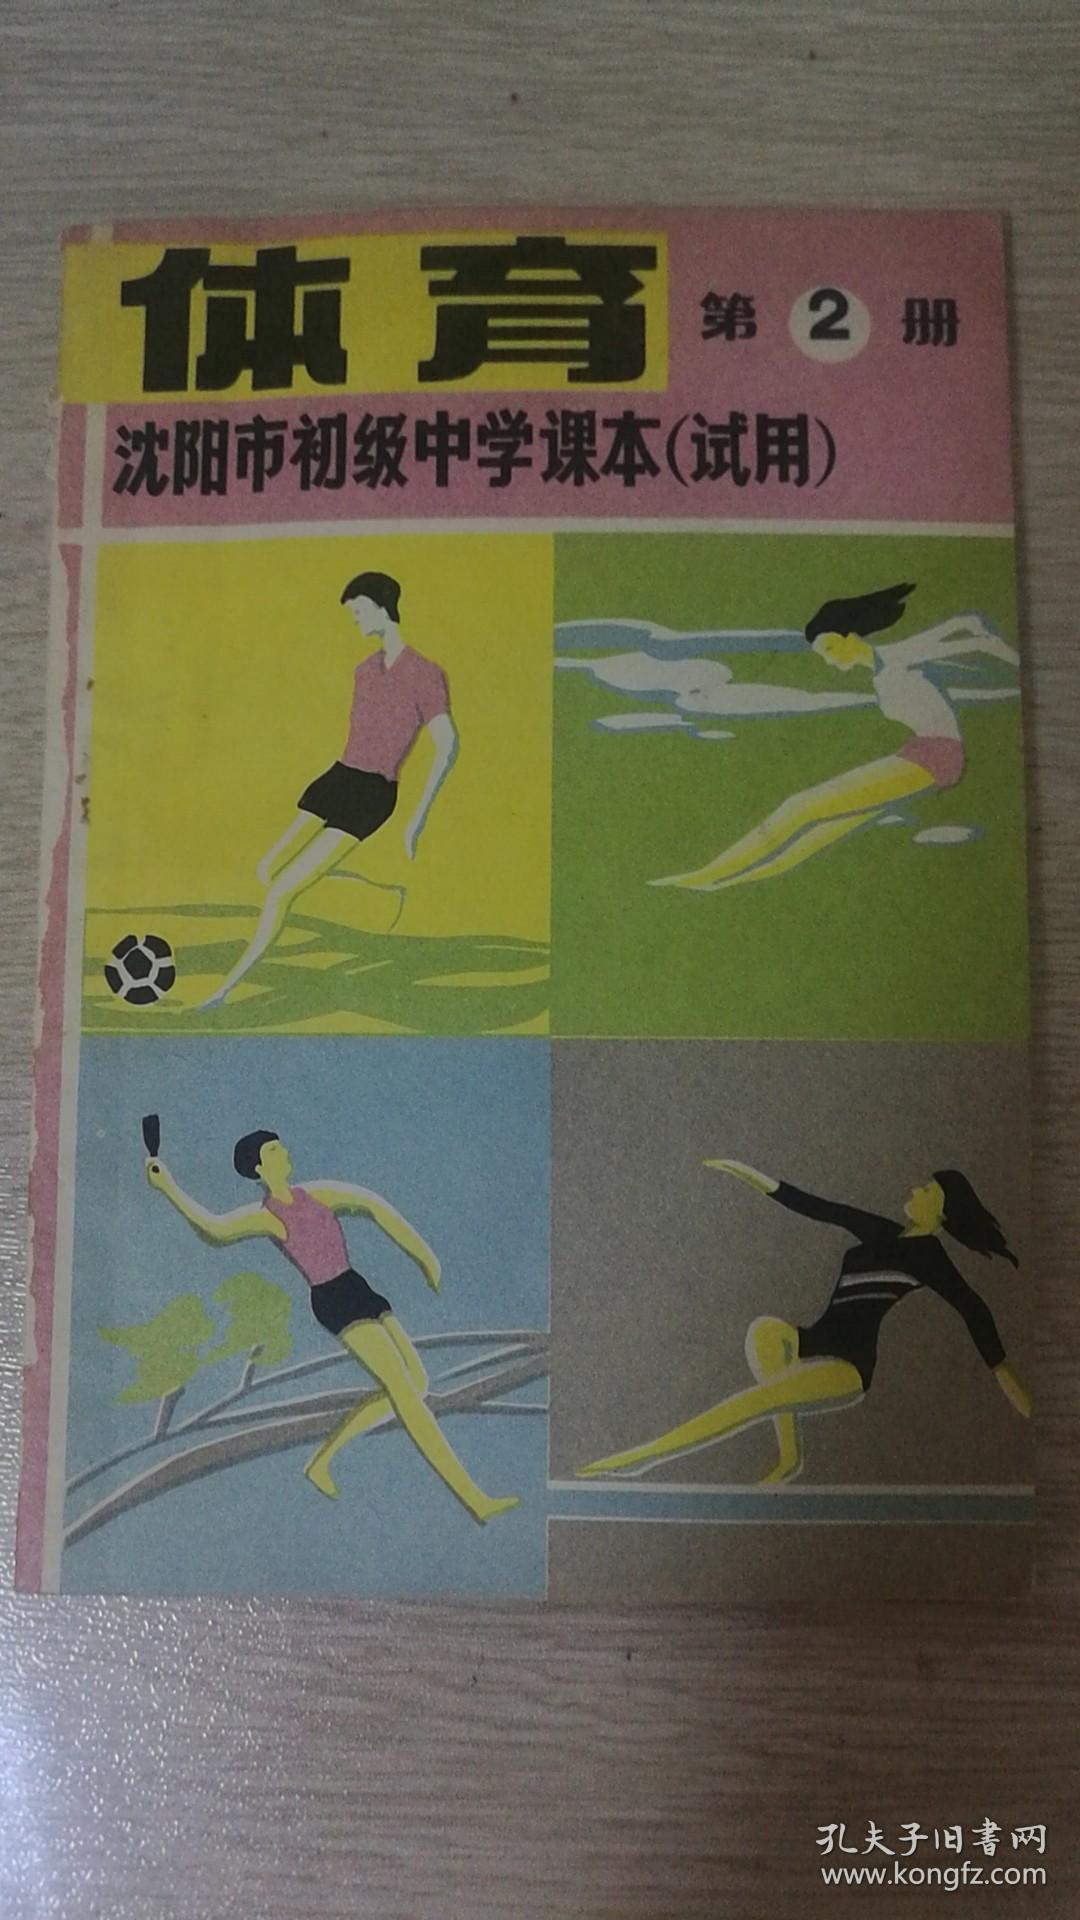 沈阳市初级中学课本试用体育第2册